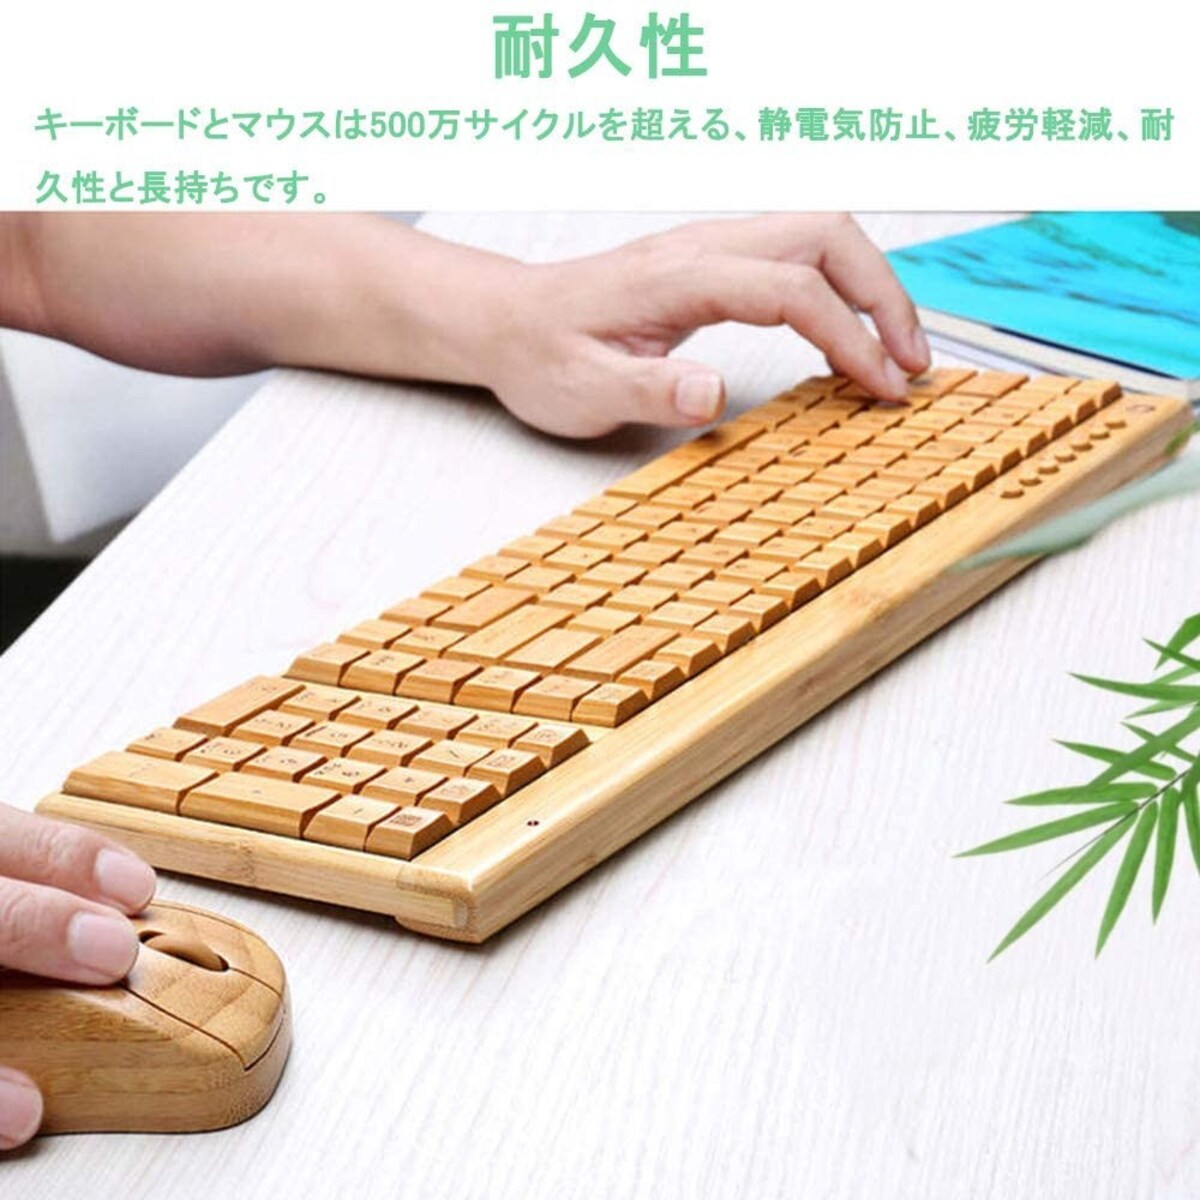  竹製 ワイヤレスキーボード画像2 